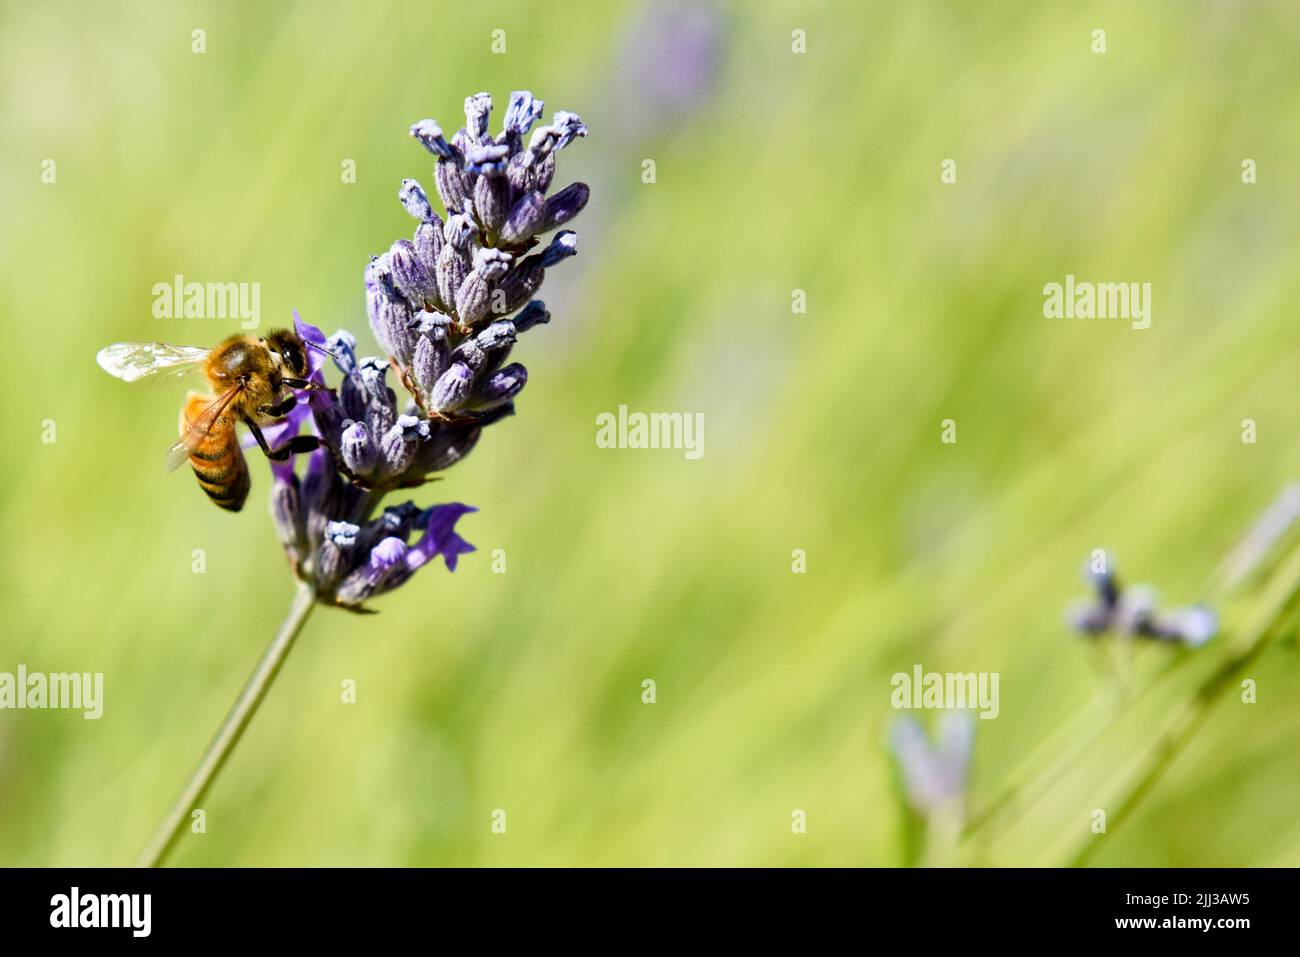 Una abeja de miel recolectando polen de una flor como parte del proceso de elaboración de la miel Foto de stock